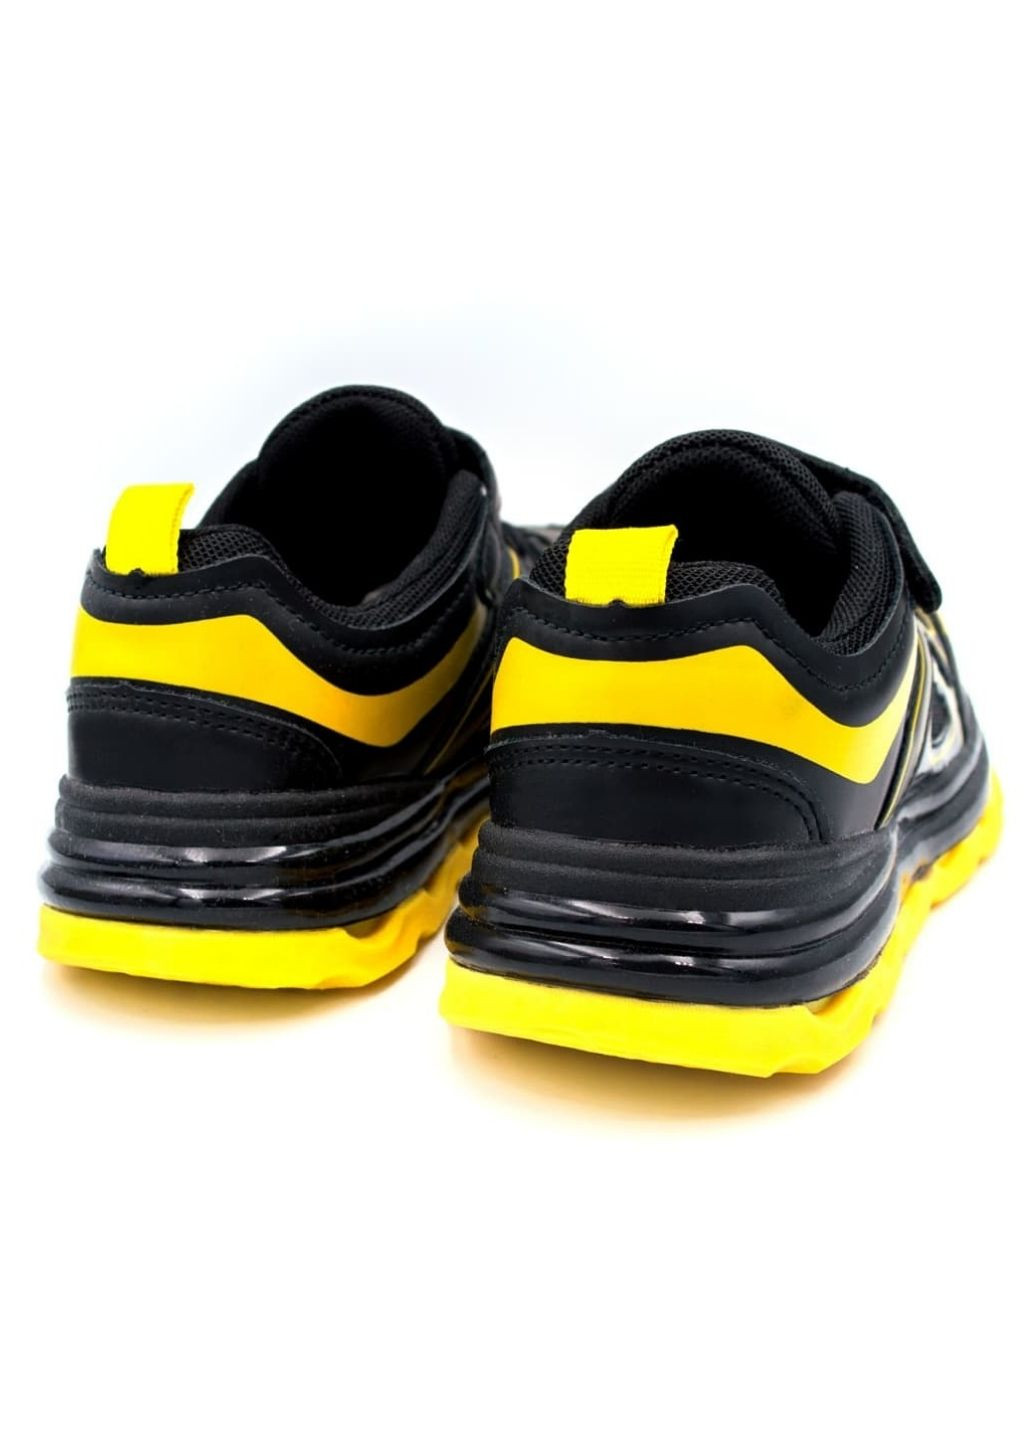 Черные демисезонные кроссовки детские для мальчика С.Луч